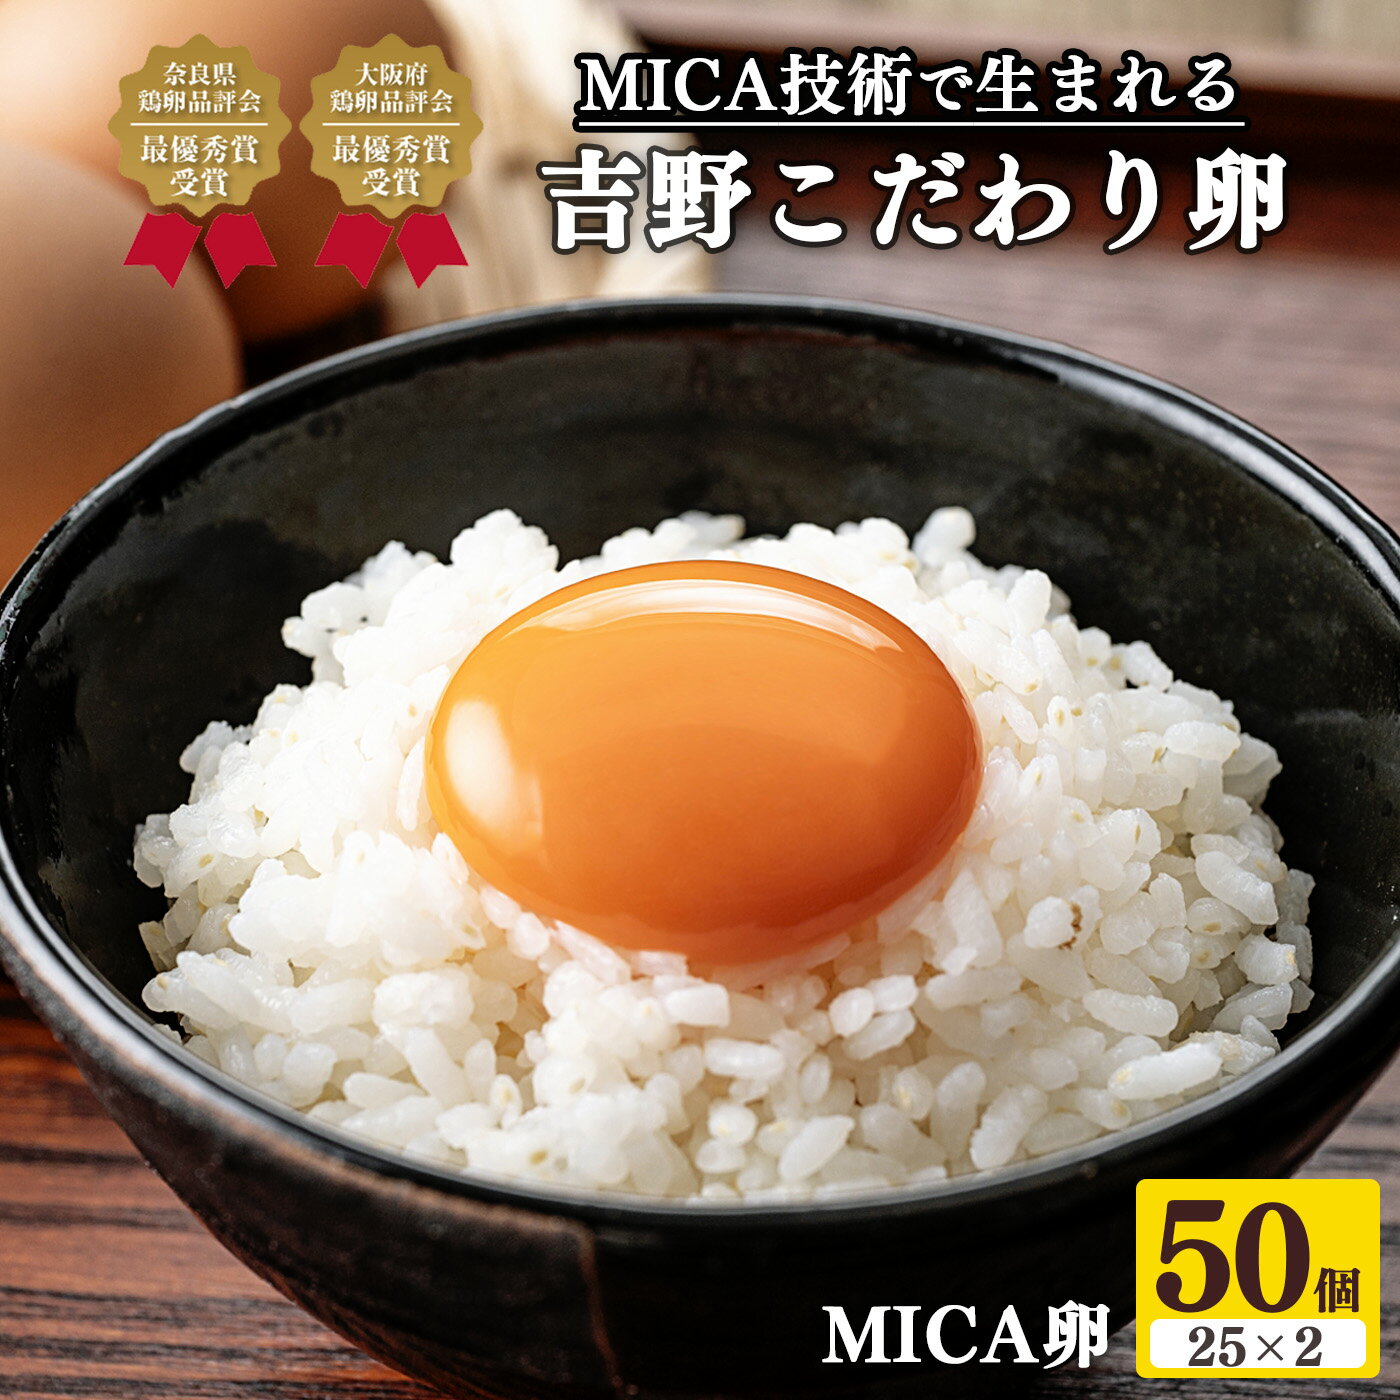 【ふるさと納税】吉野こだわり卵 MICA卵 50個 （ 25個 × 2 ） たまご 奈良県 吉野町